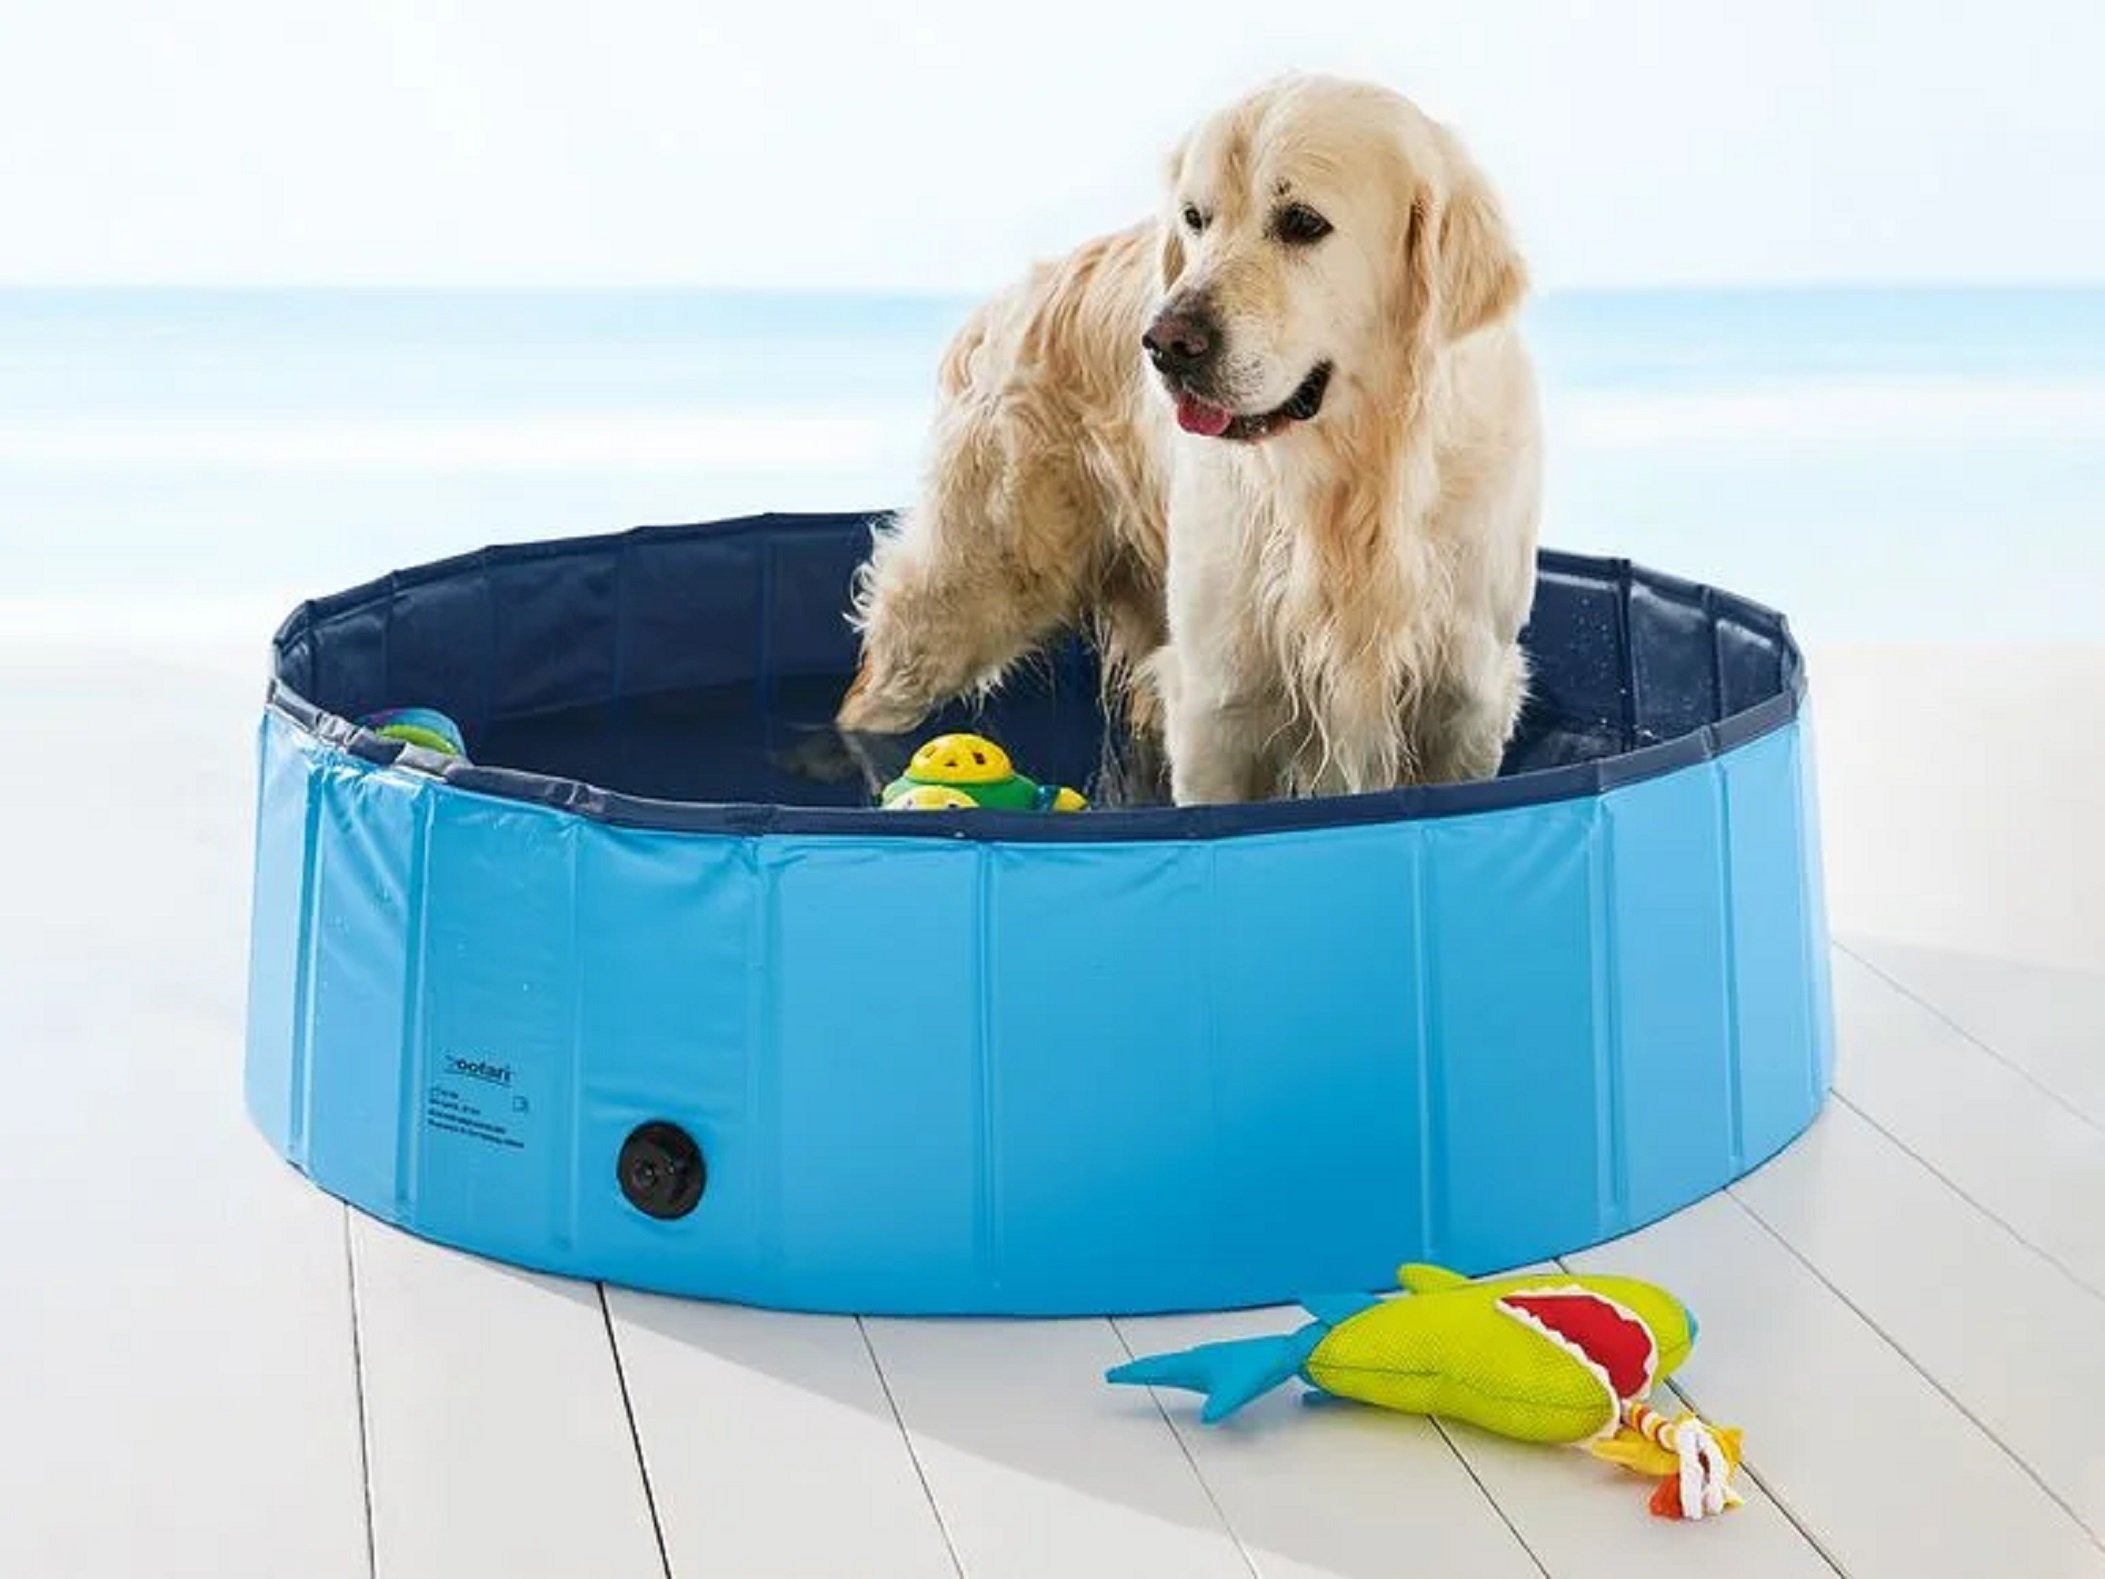 La piscina plegable per a gossos de Lidl per refrescar la teva mascota a l'estiu